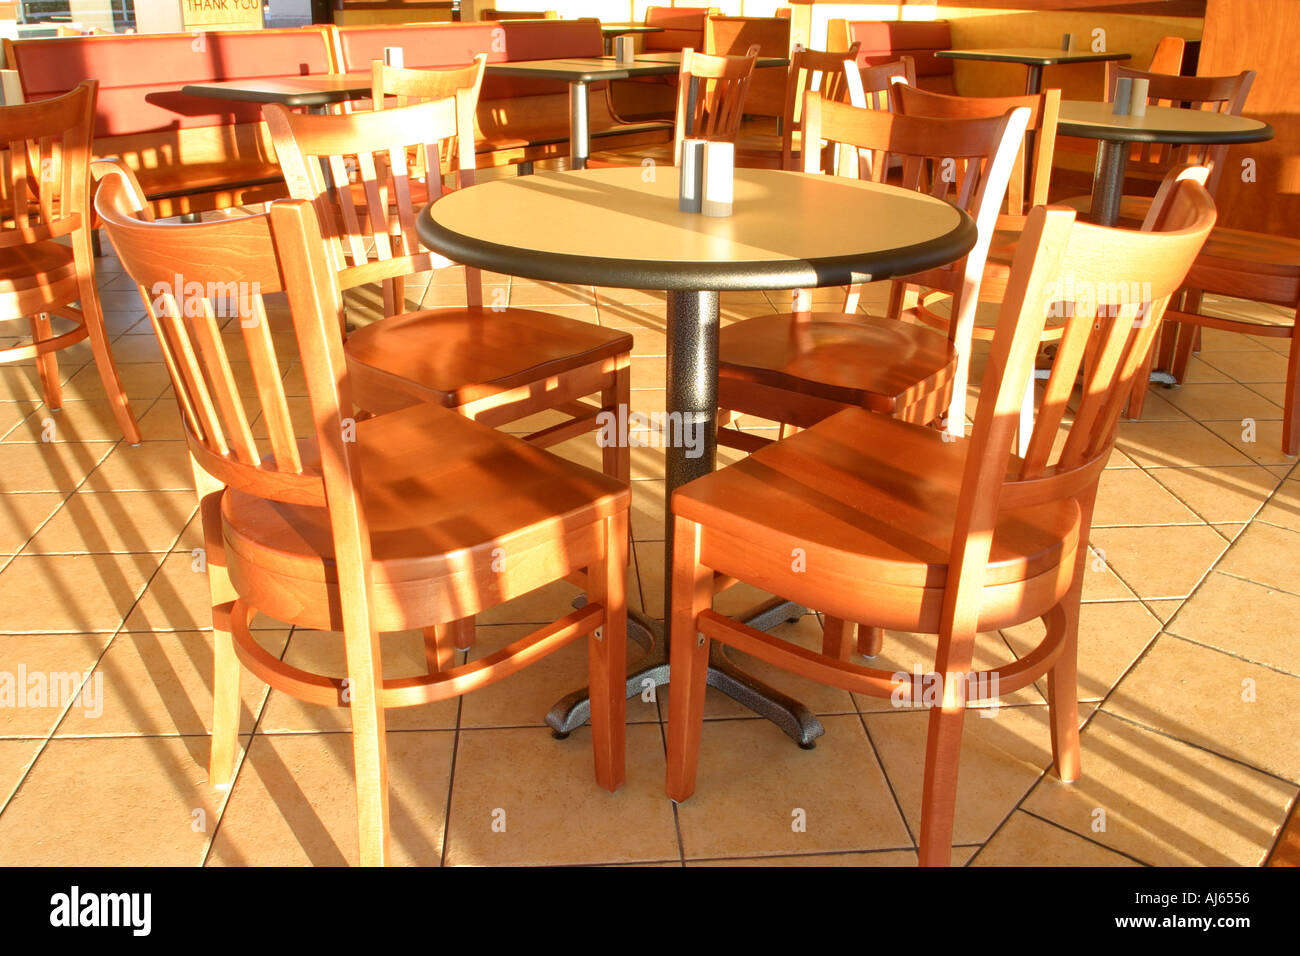 Table et chaises vides dans un restaurant Banque D'Images